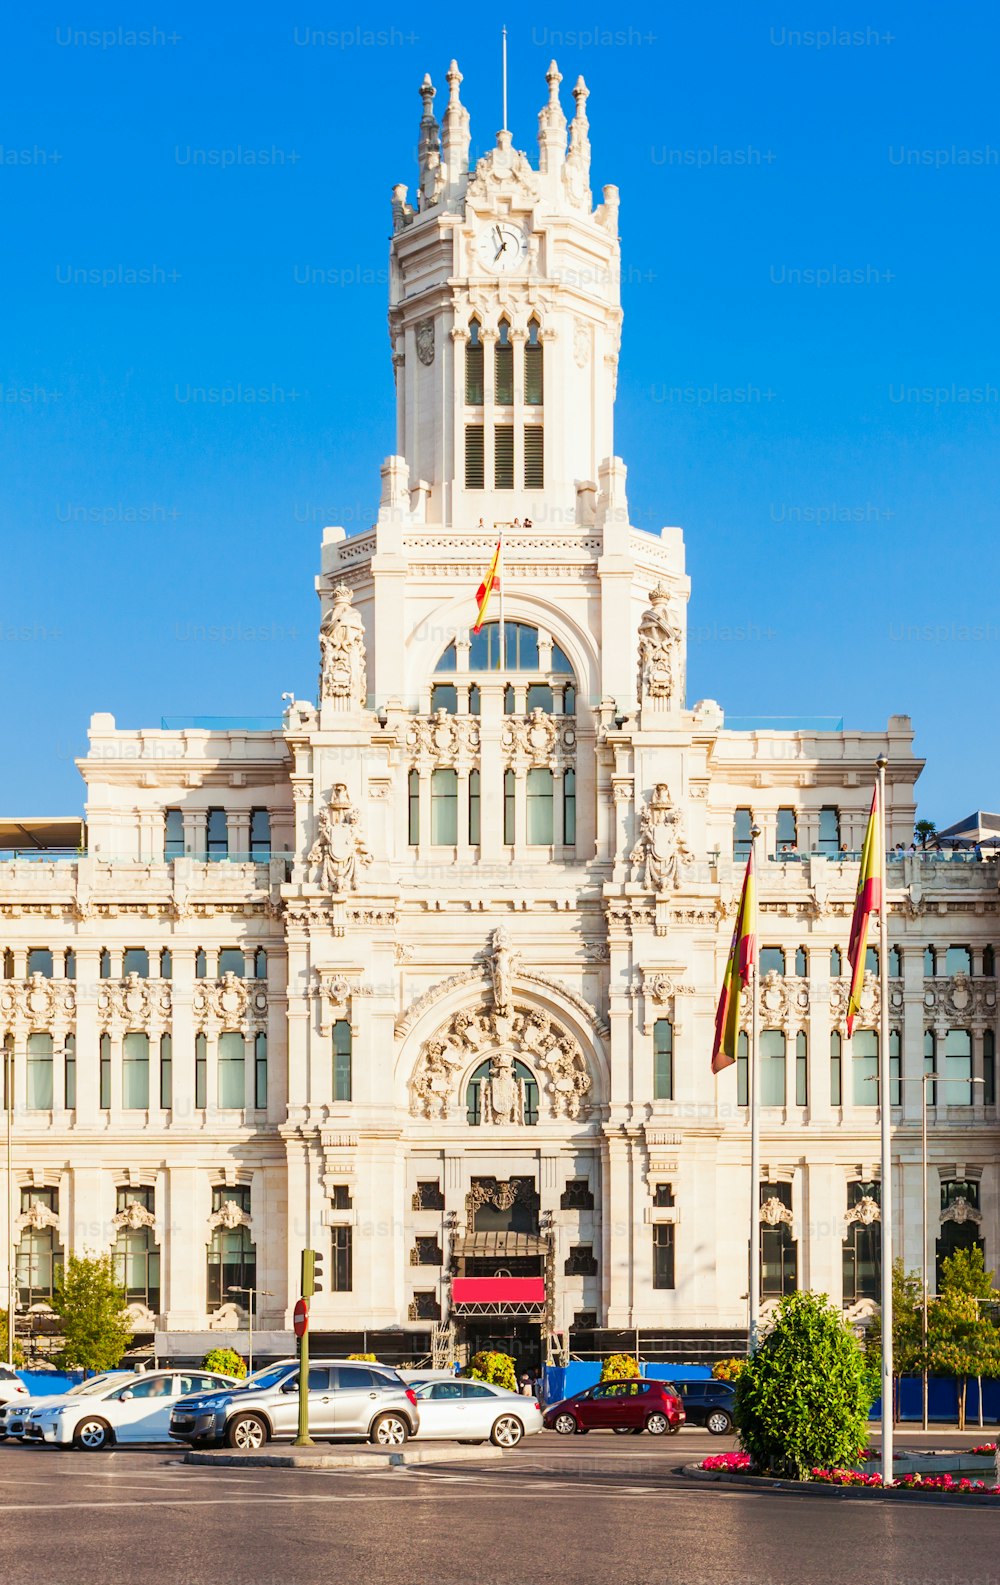 El Palacio de Cibeles o Palacio de Cibeles es un palacio situado en la Plaza de Cibeles en el centro de Madrid, España.